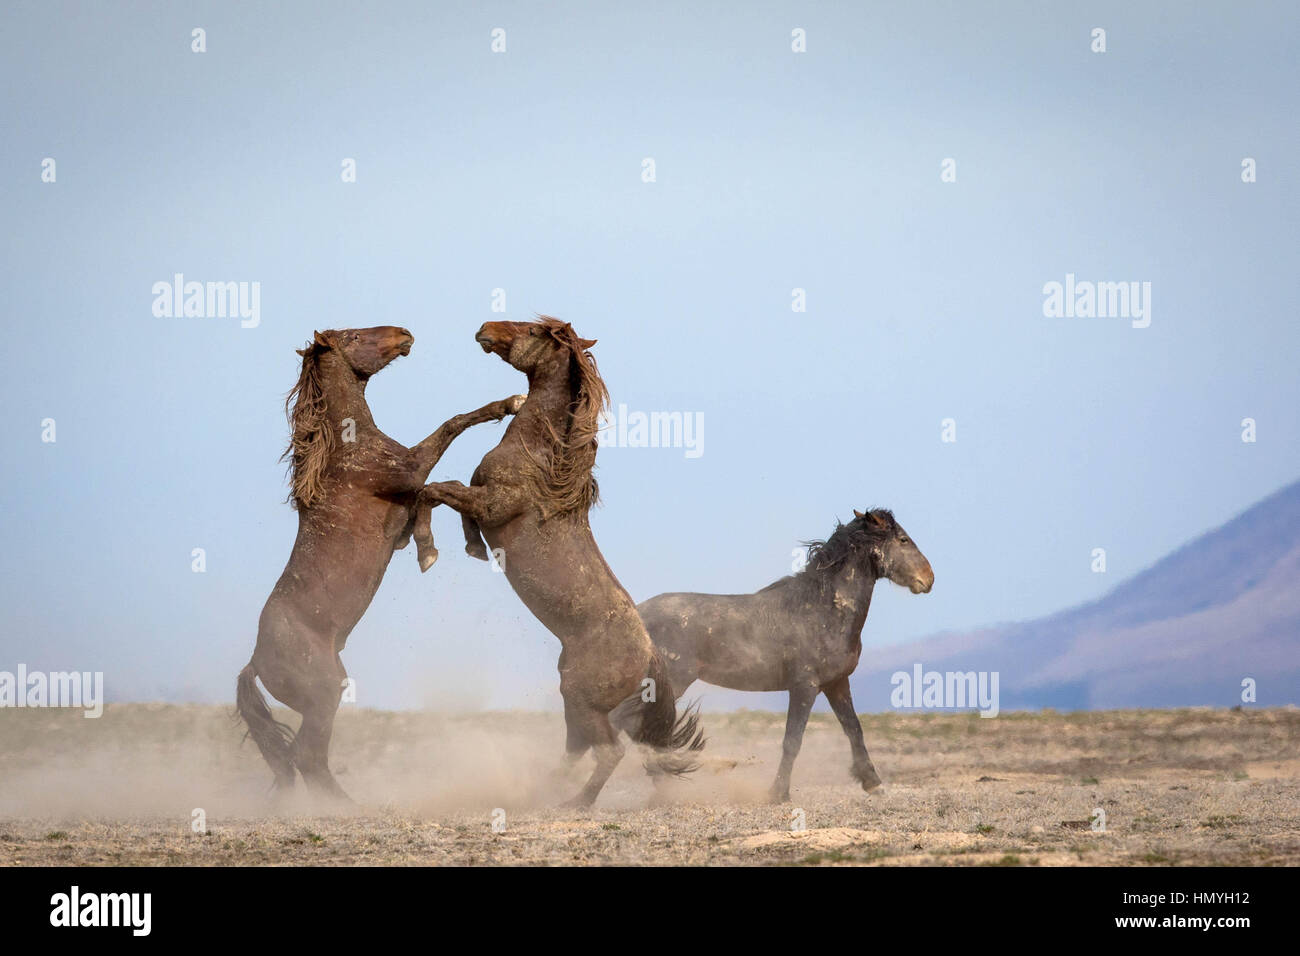 Stock Photo caballos salvajes Sparring (Equus ferus) en el oeste del desierto, Utah, EE.UU., América del Norte Foto de stock